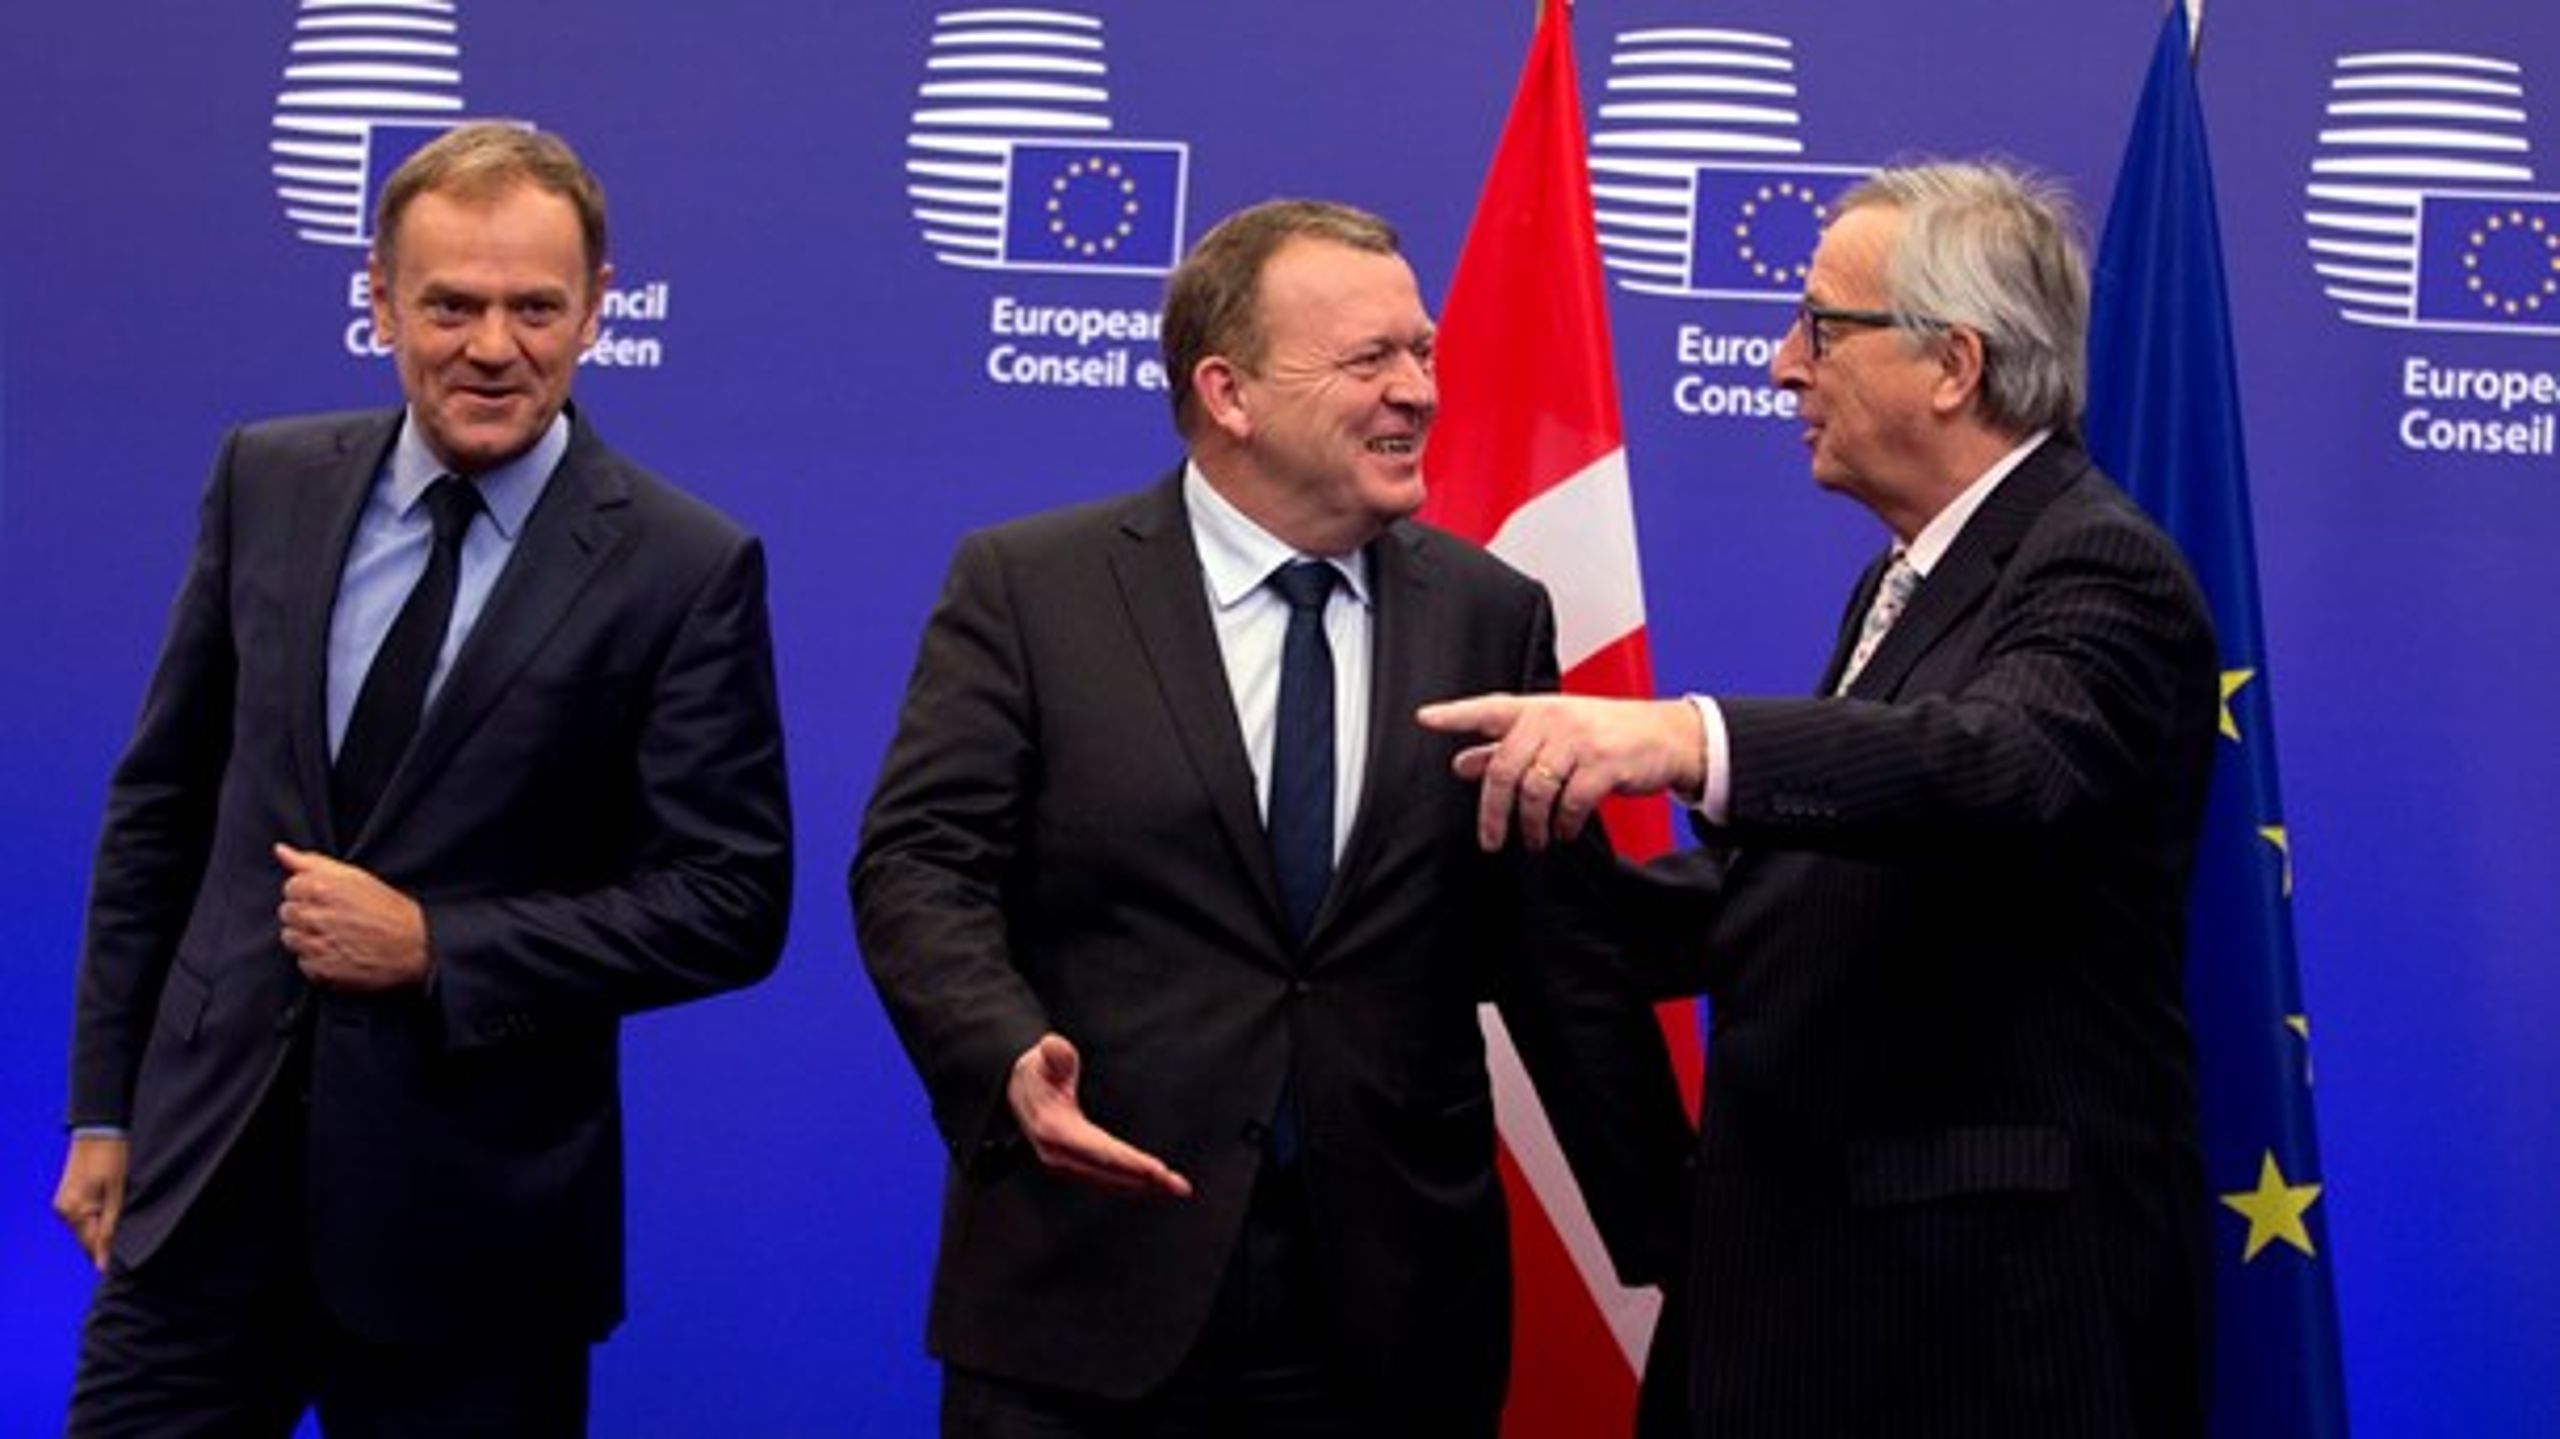 Den danske statsminister Lars Løkke Rasmussen (V) læner sig mere op af formanden for Det Europæiske Råd Donald Tusk (t.v.) end EU-Kommissionens formand Jean-Claude Juncker (t.h.), når det kommer til EU's fremtid.&nbsp;